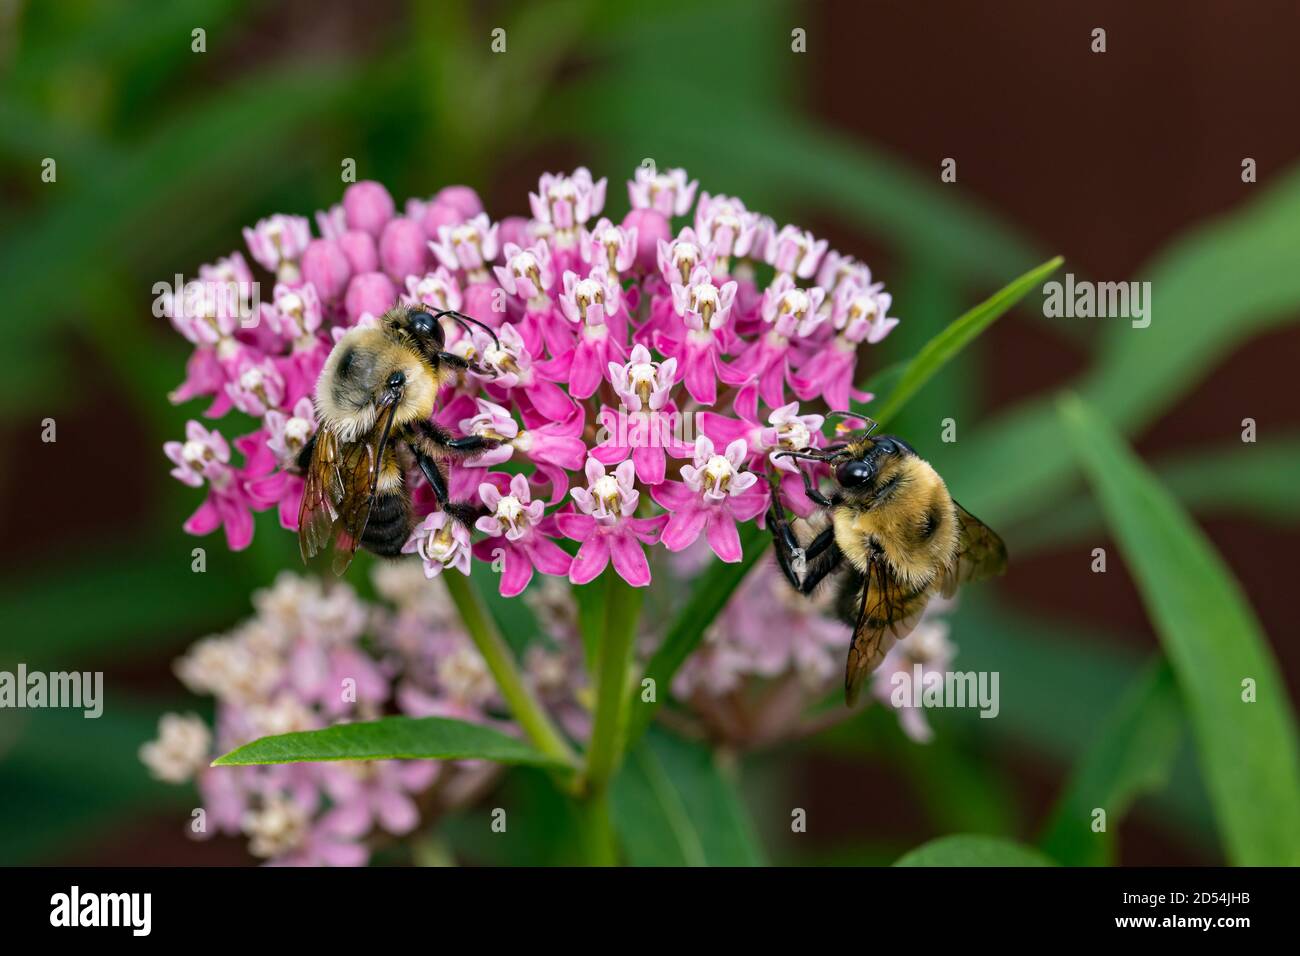 Nahaufnahme von zwei gemeinsamen östlichen Bumble Bees auf Sumpfmilchkraut Wildblume. Konzept von Insekten, Naturschutz, Lebensraumbewahrung, Blumengarten Stockfoto